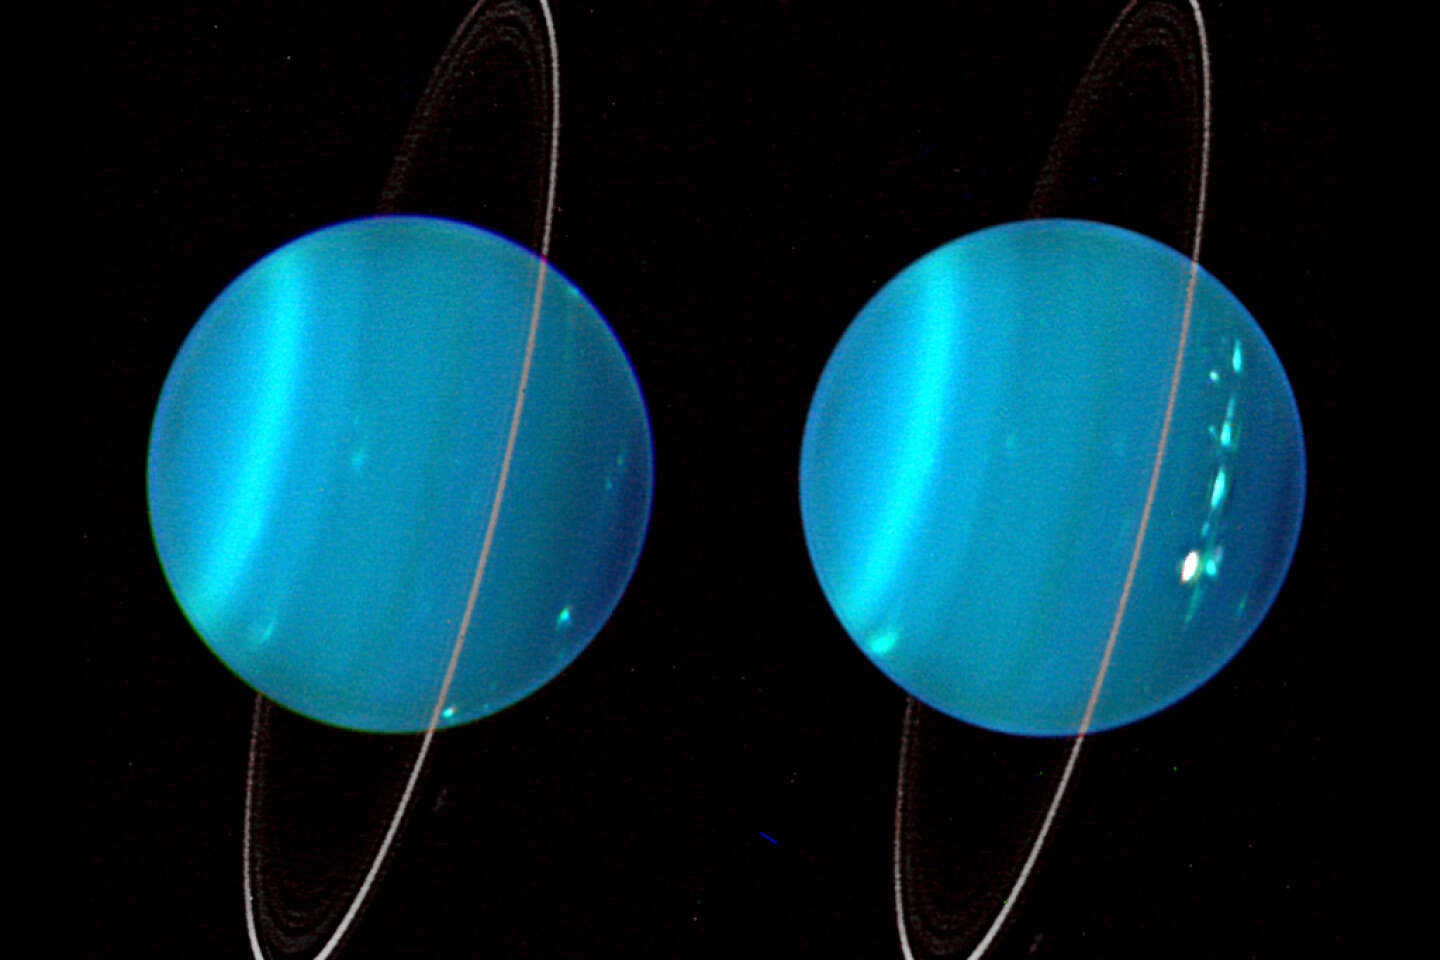 Esplorando Urano nell’anno 2044, il tempo sta per scadere per prepararsi a questa ambiziosa missione